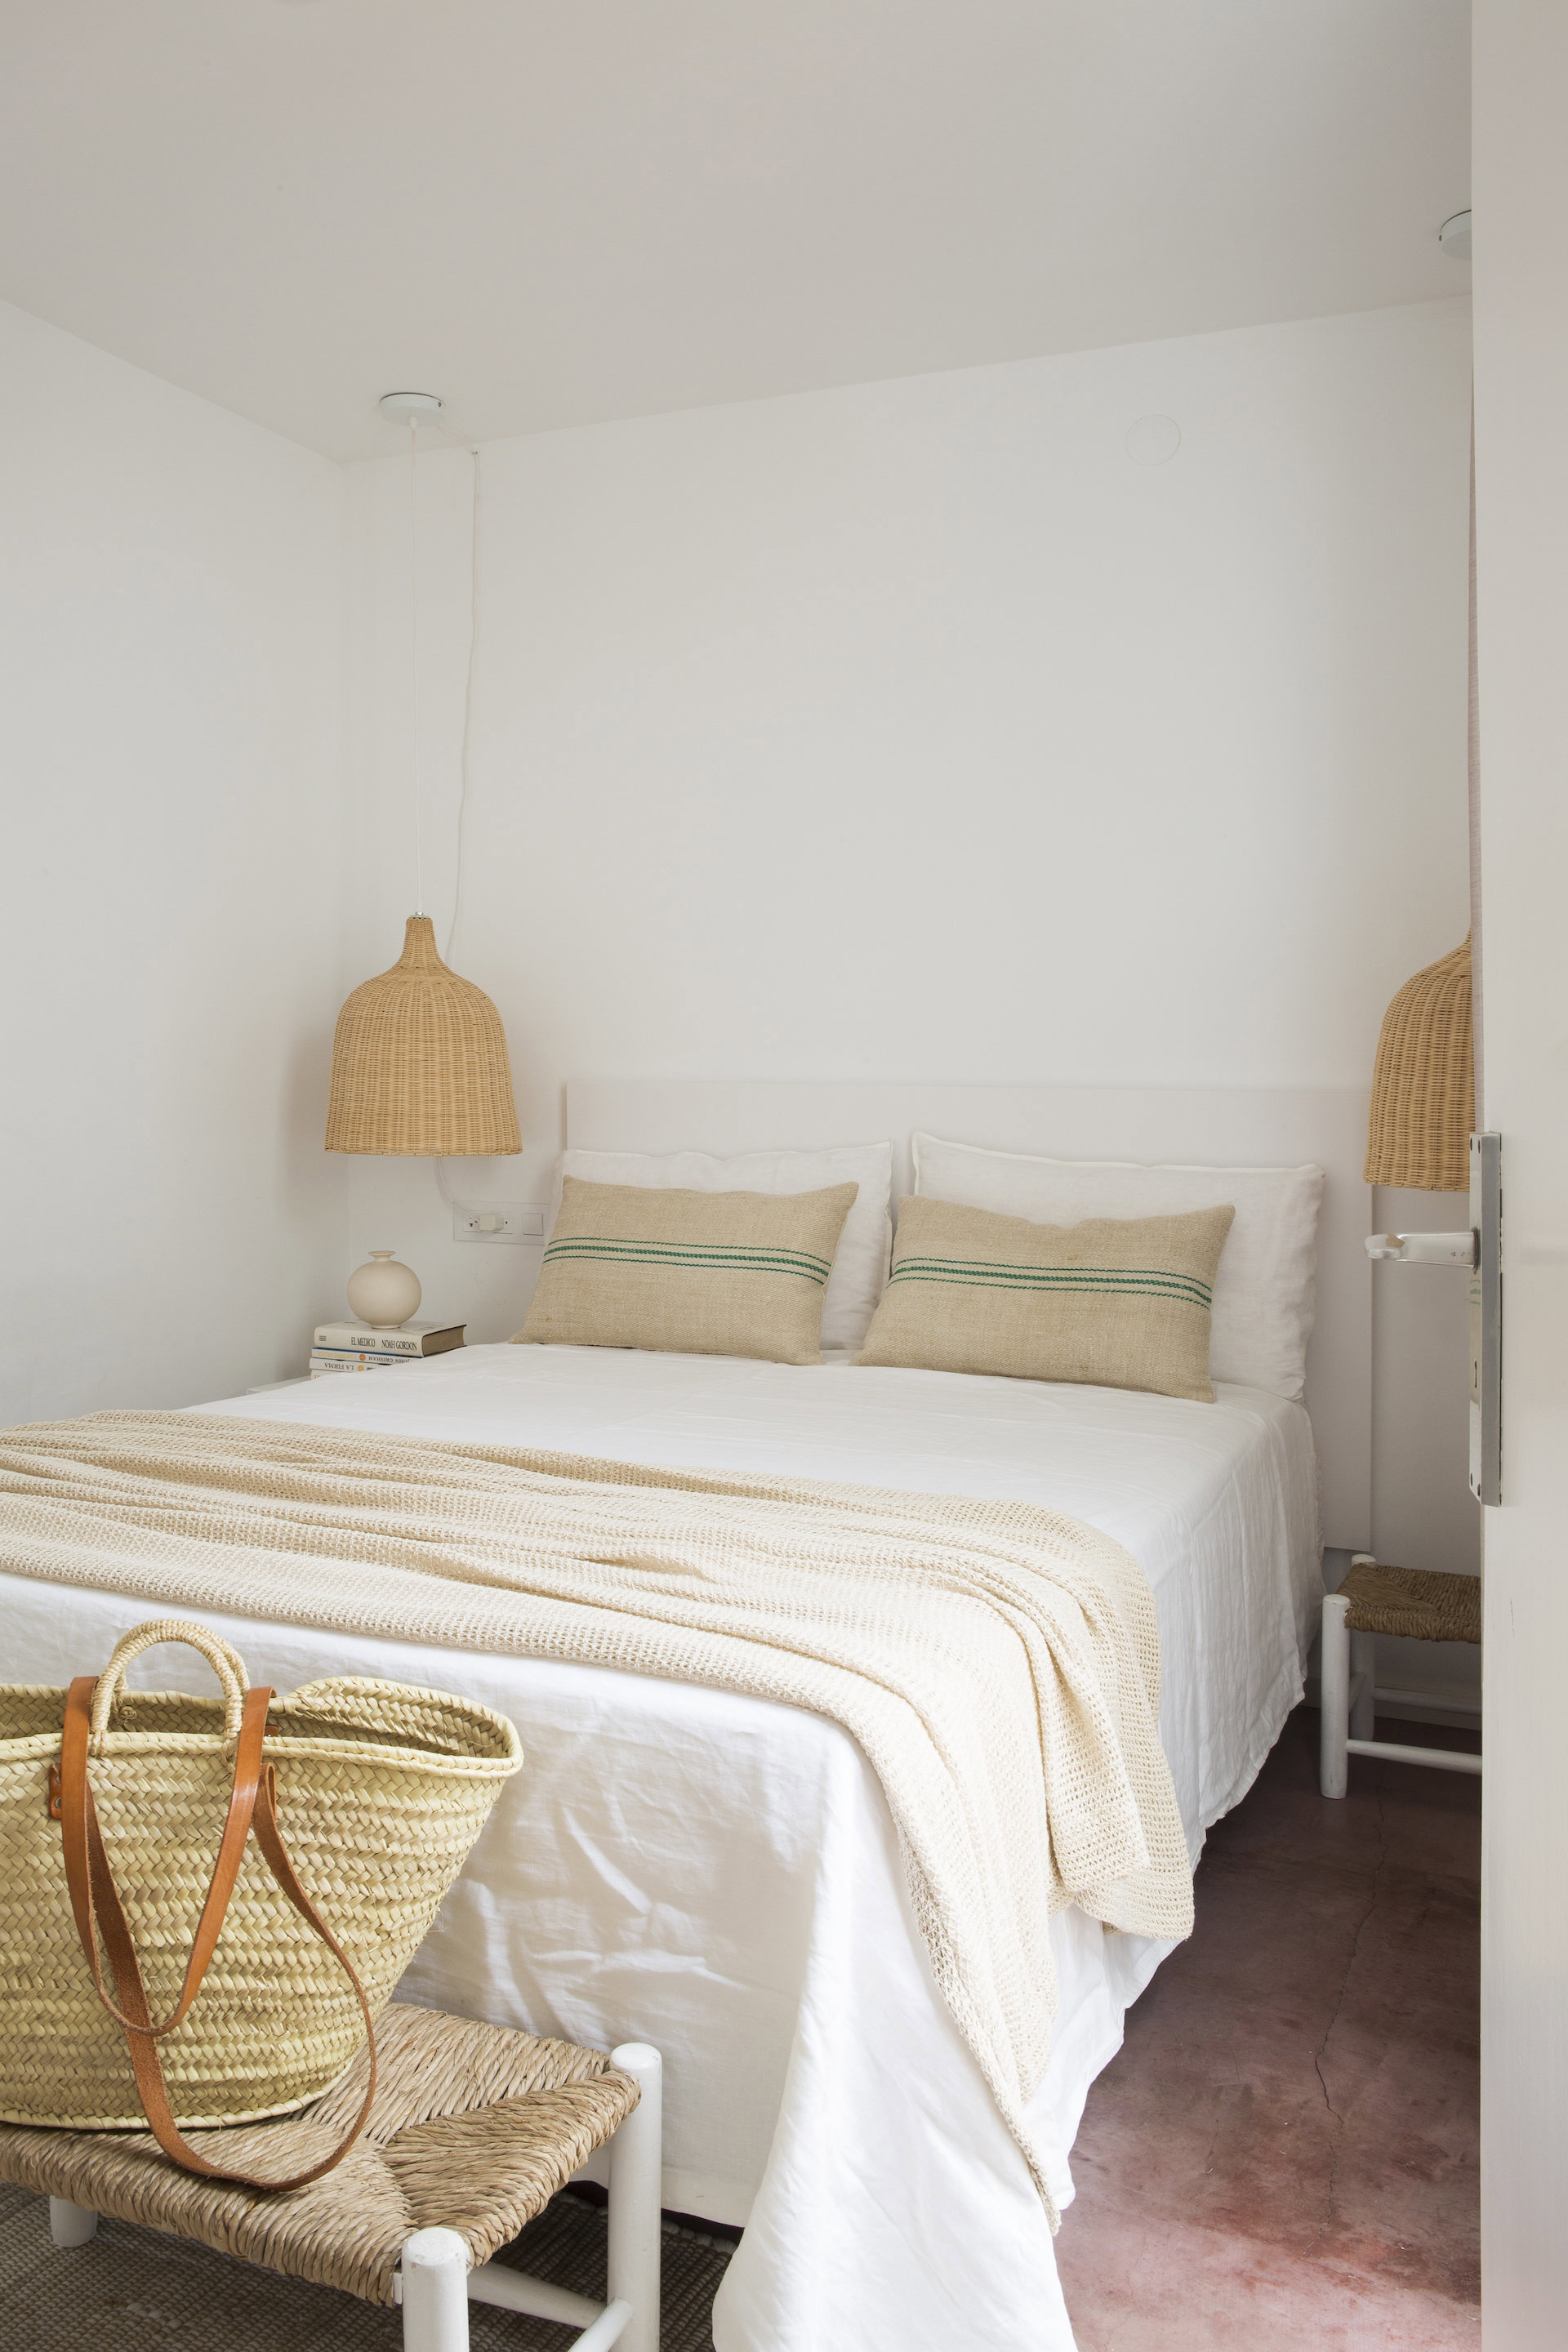 Dormitorio minimalista en blanco con tonos cálidos en los cojines, las lámparas, la ropa de cama y el taburete